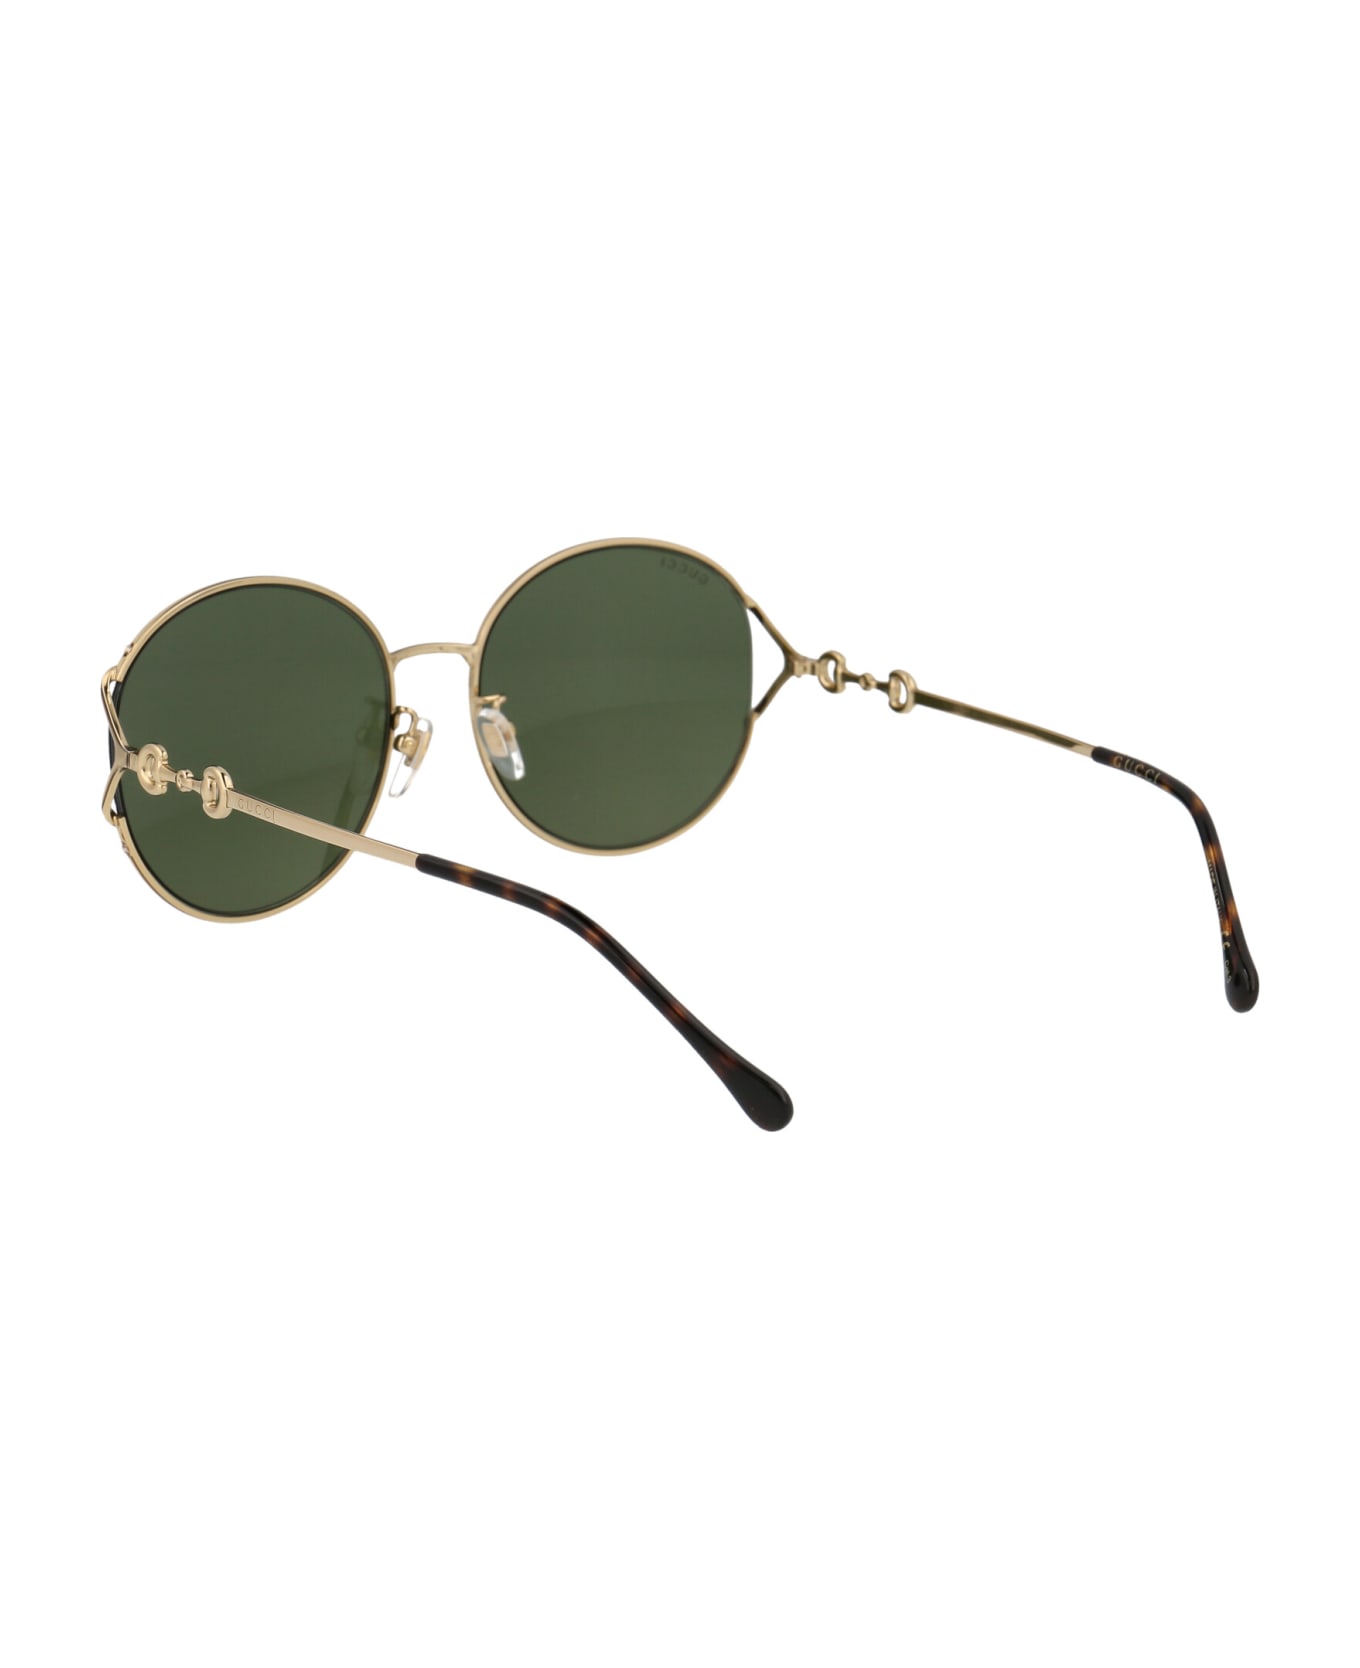 Gucci Eyewear Gg1017sk Sunglasses - 002 GOLD GOLD GREEN